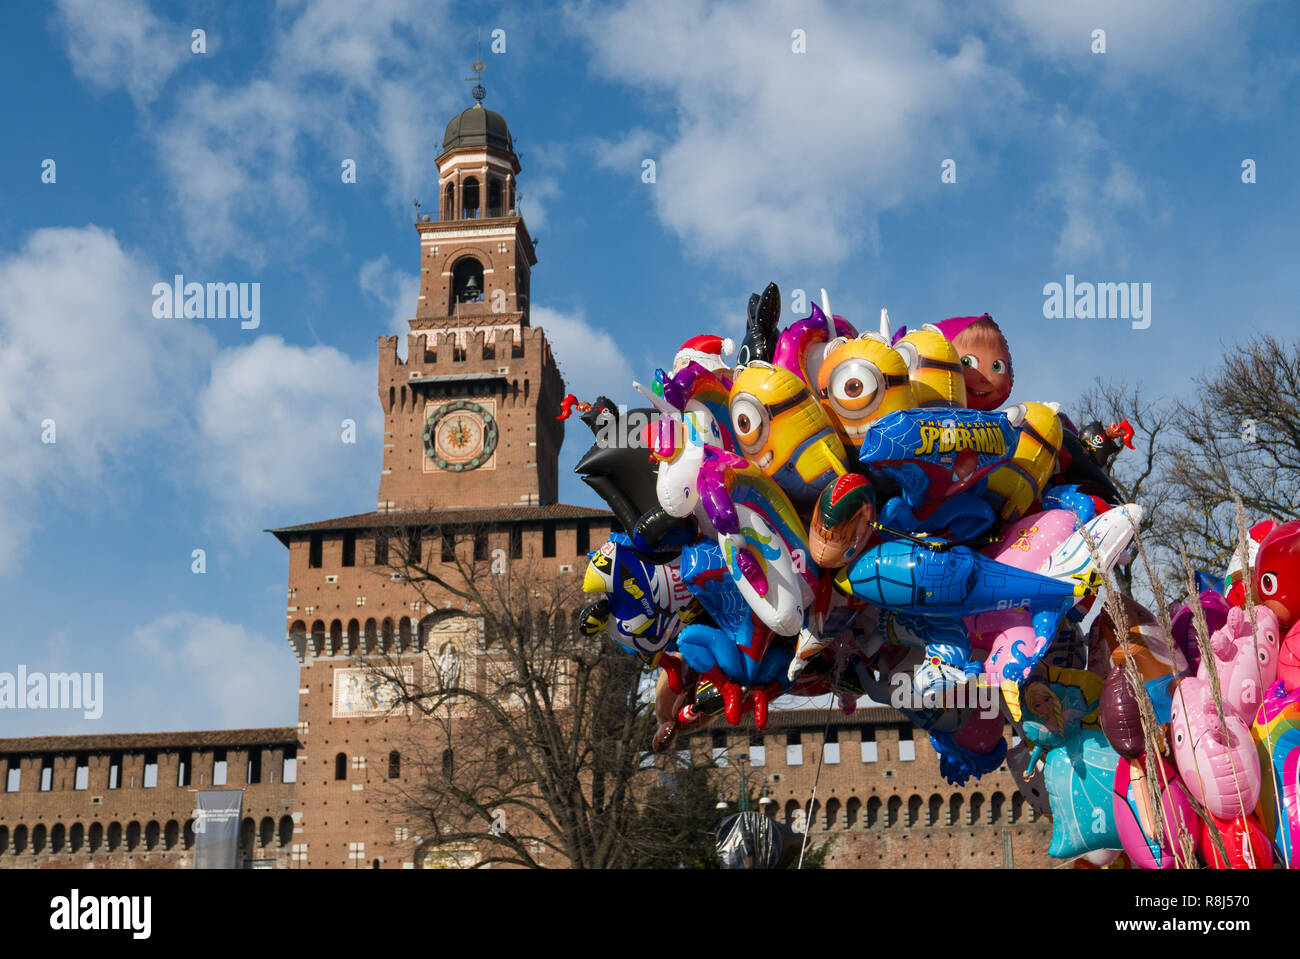 Milano, 09 Dicembre 2018 - palloni a forma di pupazzi con il Castello Sforzesco in background su una soleggiata giornata invernale per la "Fiera degli Oh bej! Foto Stock